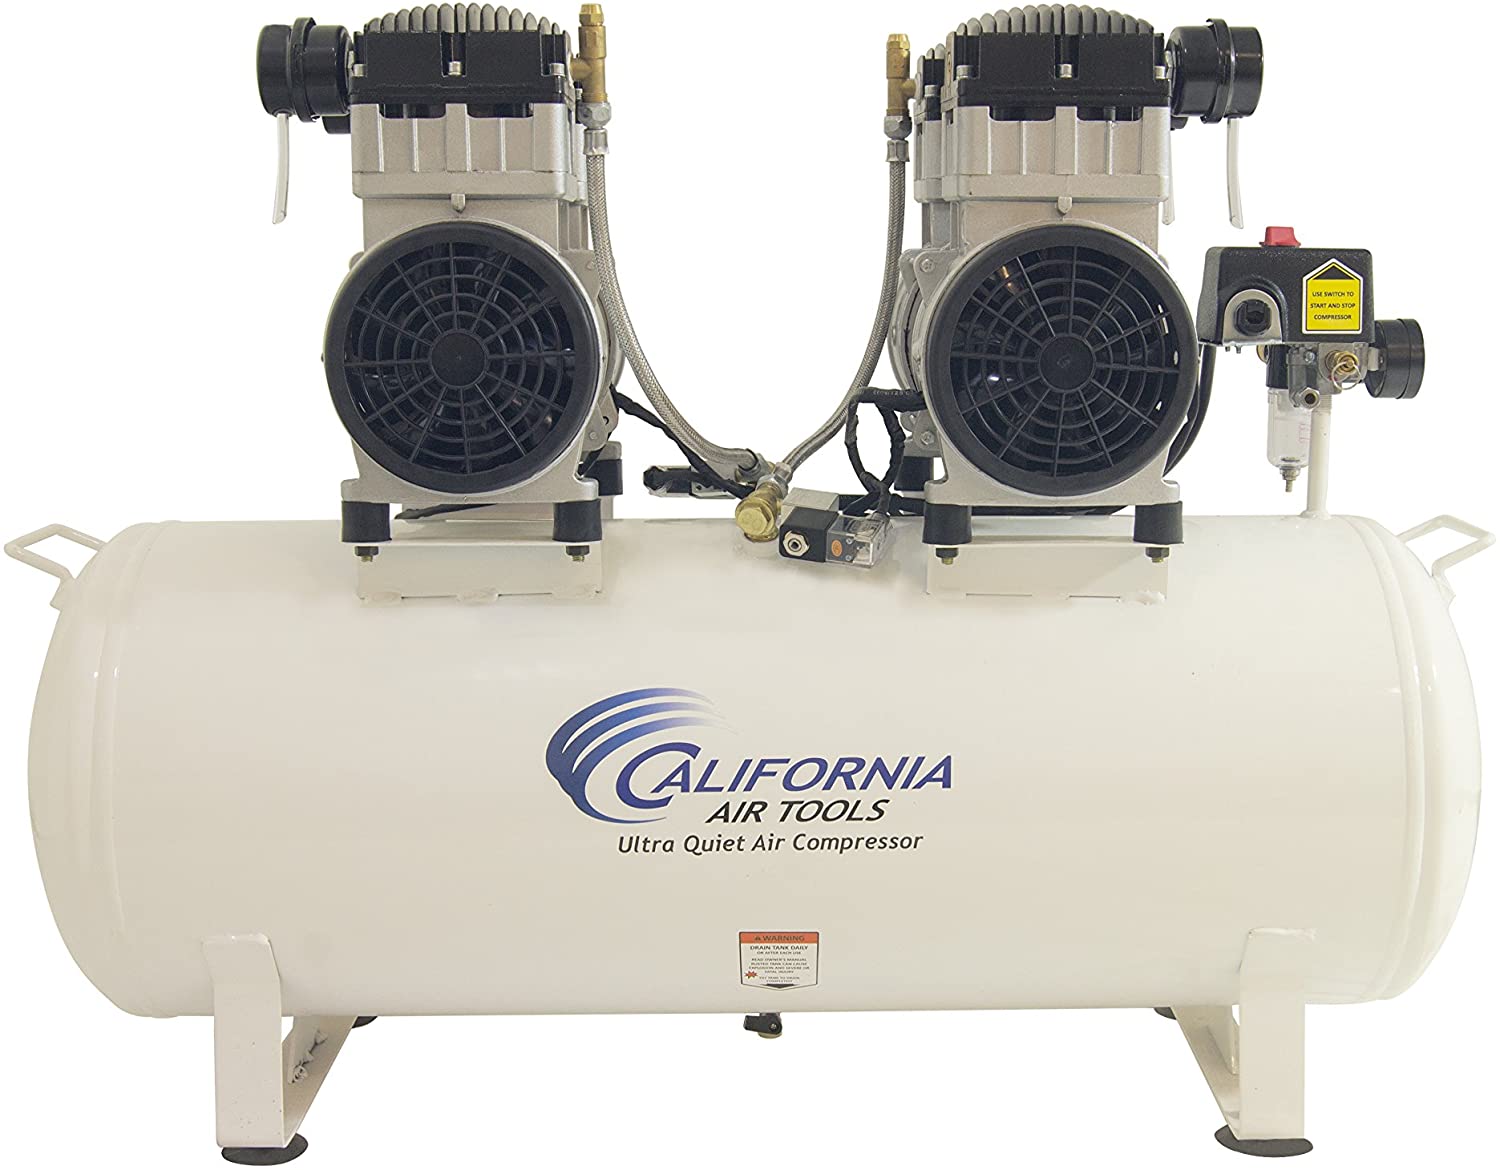 Top Quietest Gallon Air Compressors Soundproof Empire